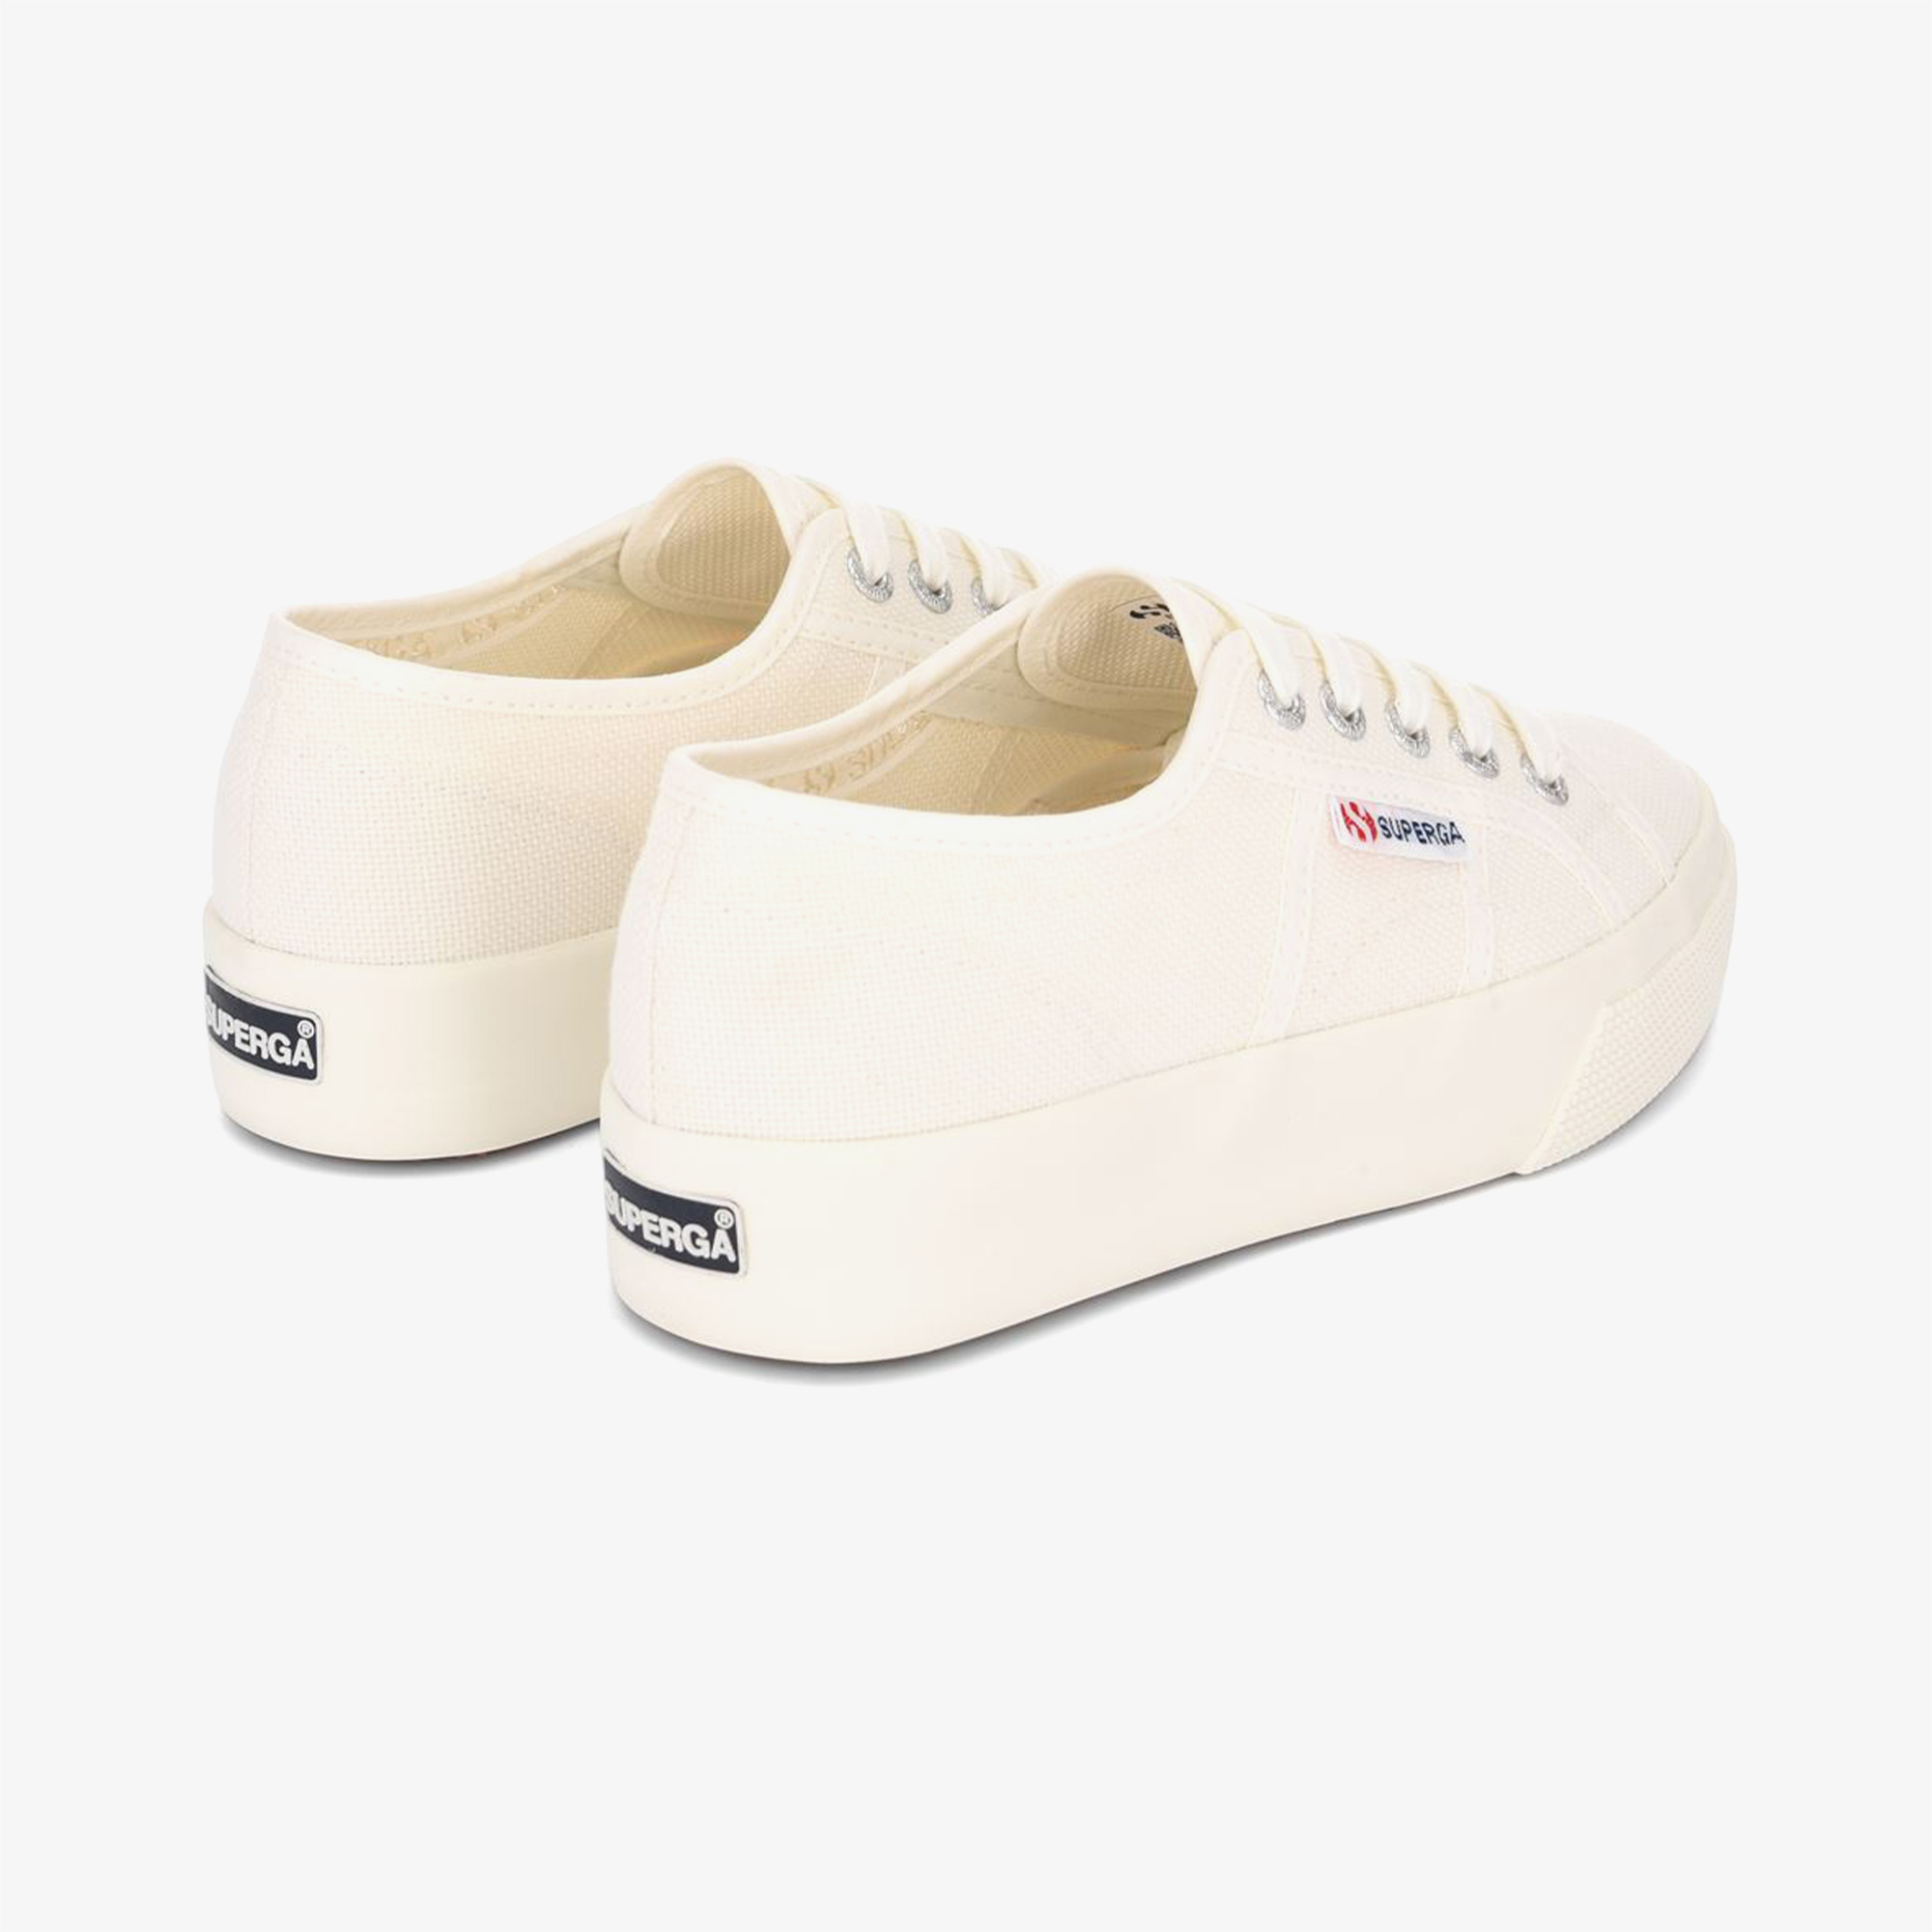 Superga 2730 Cotu Kadın Beyaz Sneaker